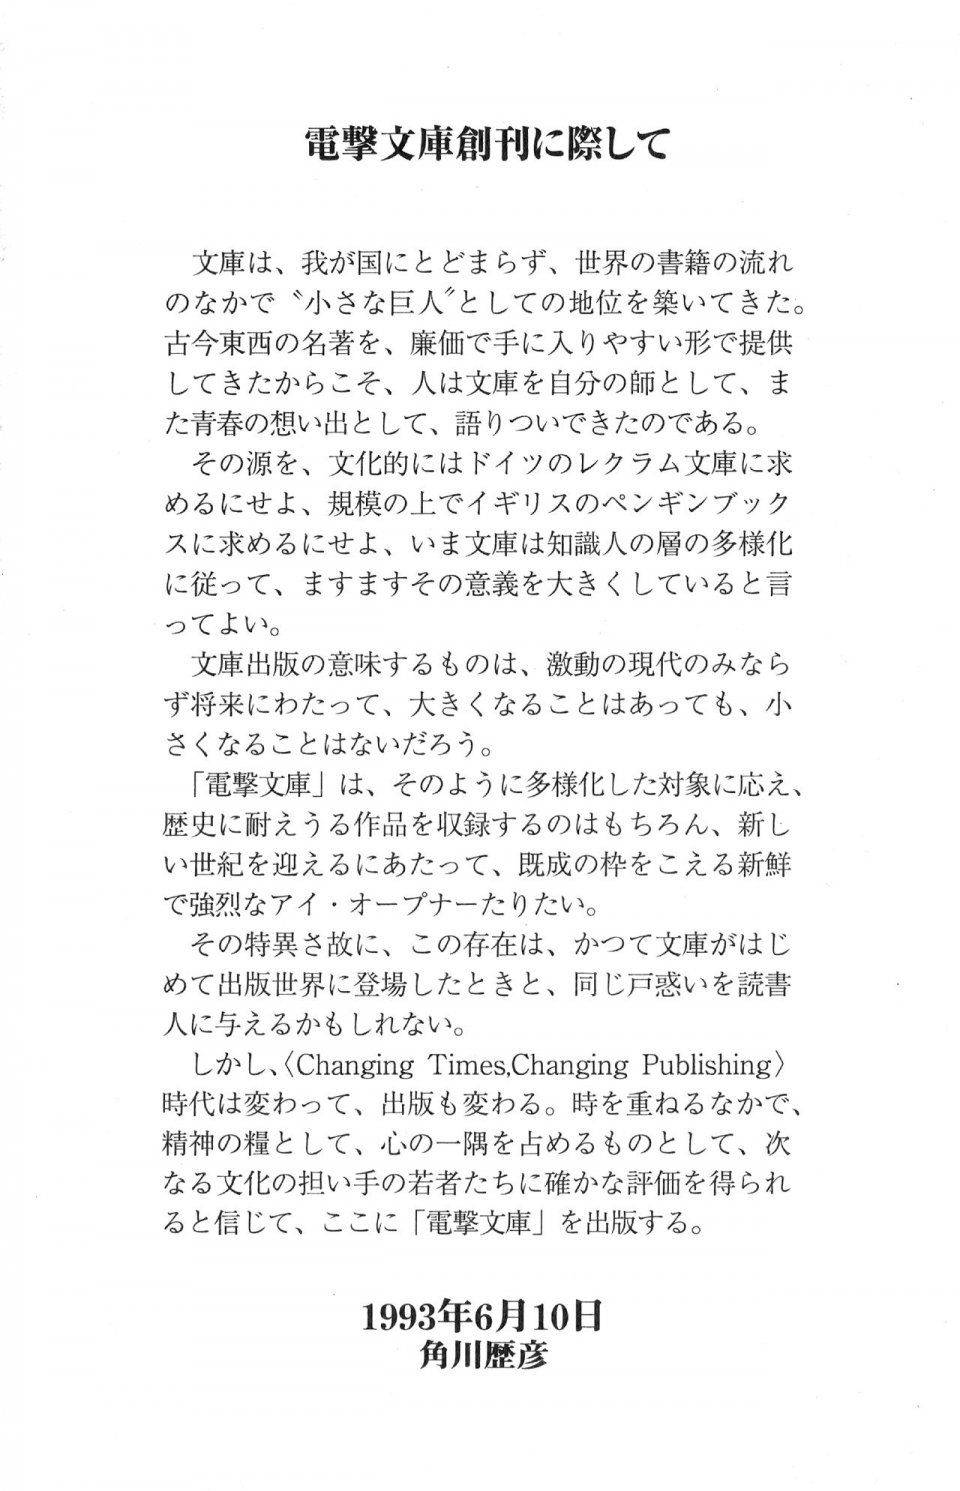 Kyoukai Senjou no Horizon LN Vol 17(7B) - Photo #826